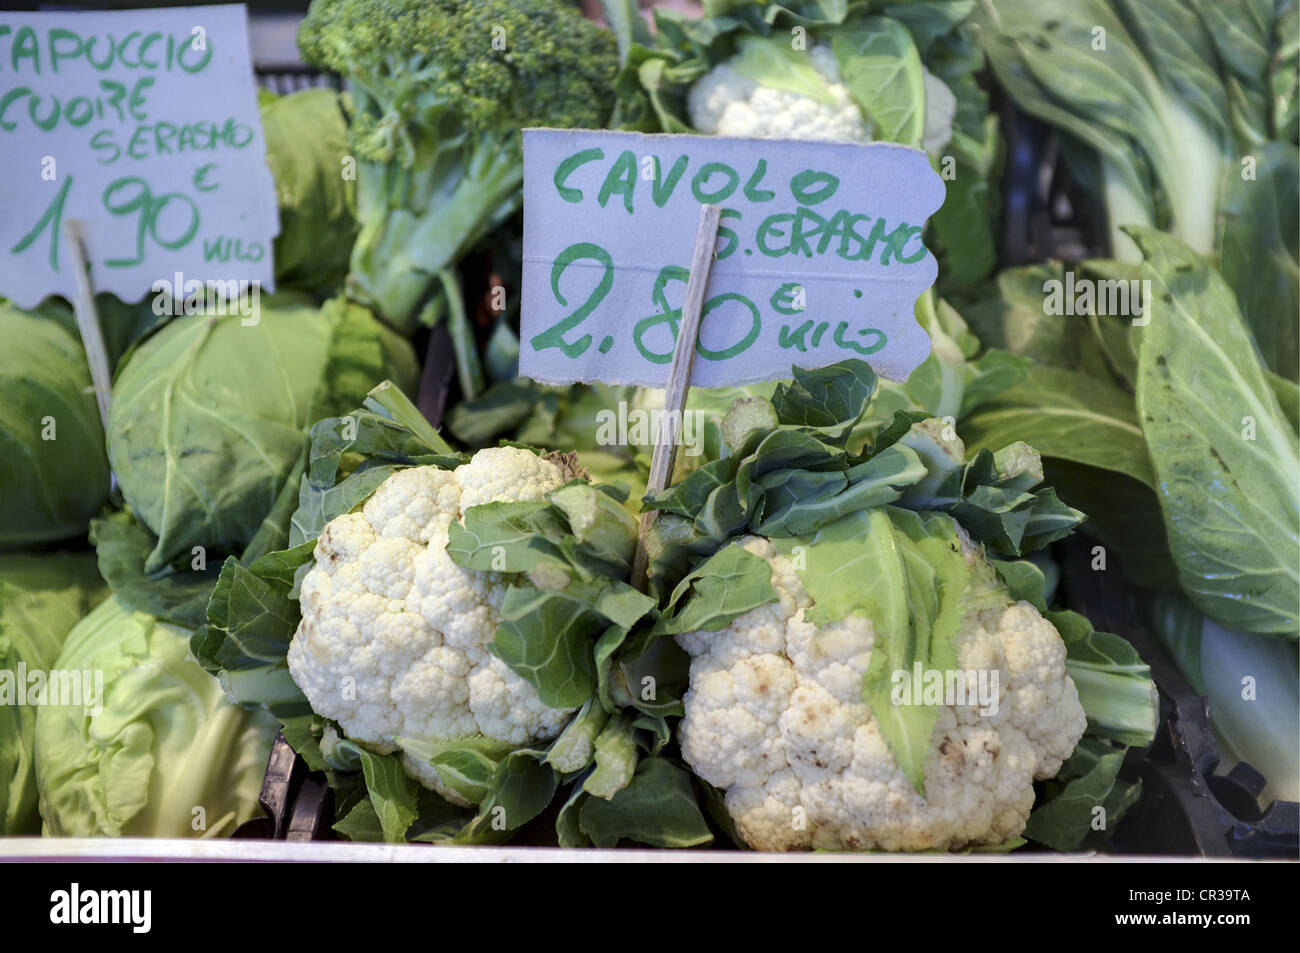 Cauliflowers, Main Food Market Near Rialto Bridge, Venice, Italy Stock Photo